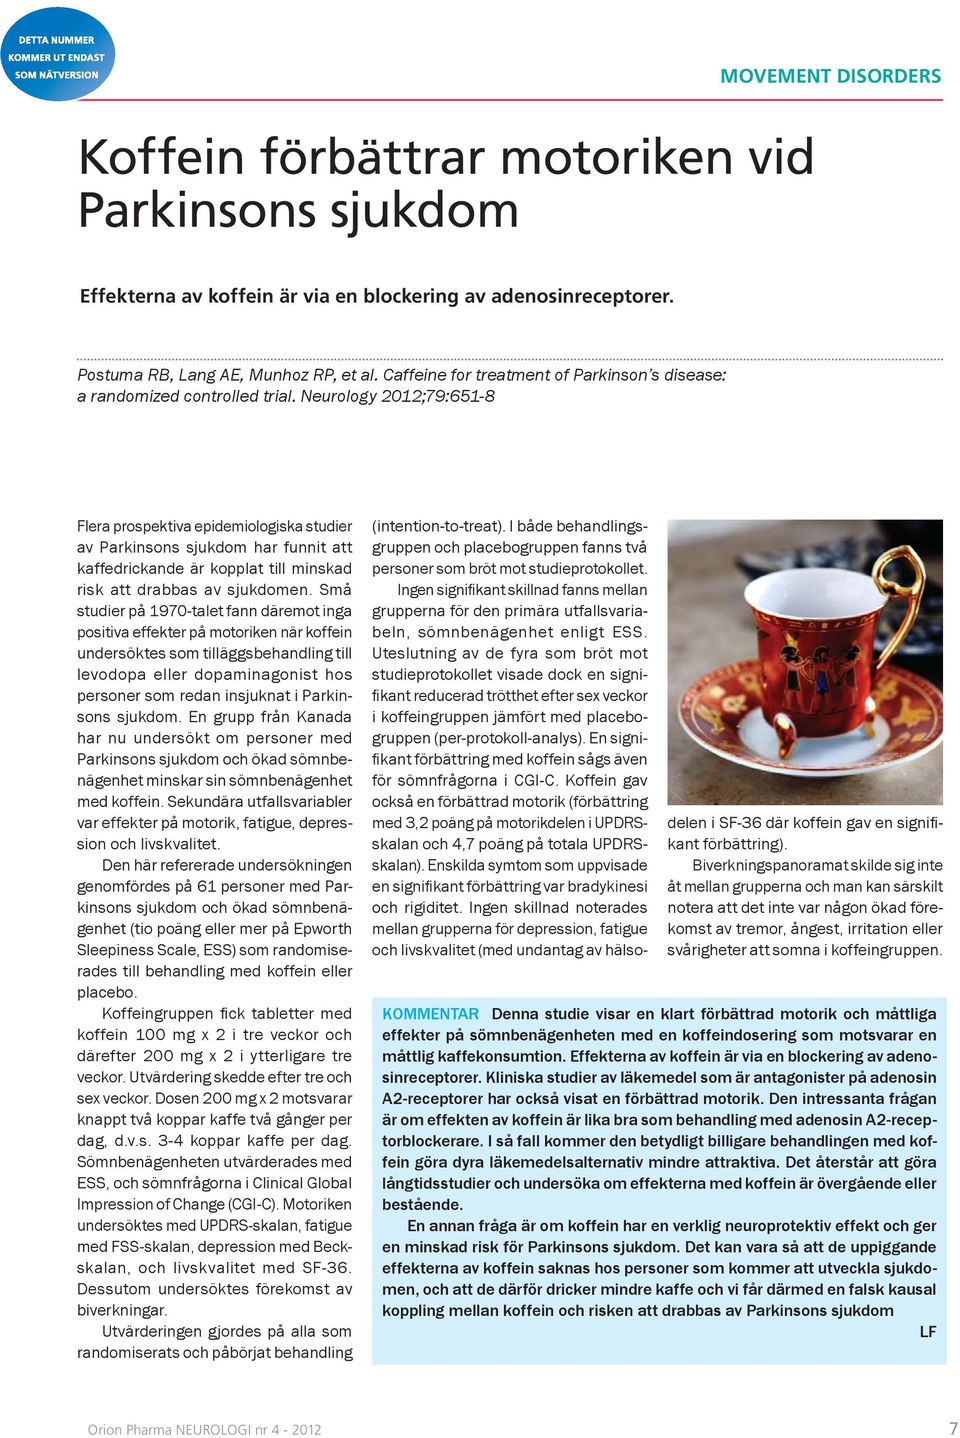 Neurology 2012;79:651-8 Flera prospektiva epidemiologiska studier av Parkinsons sjukdom har funnit att kaffedrickande är kopplat till minskad risk att drabbas av sjukdomen.